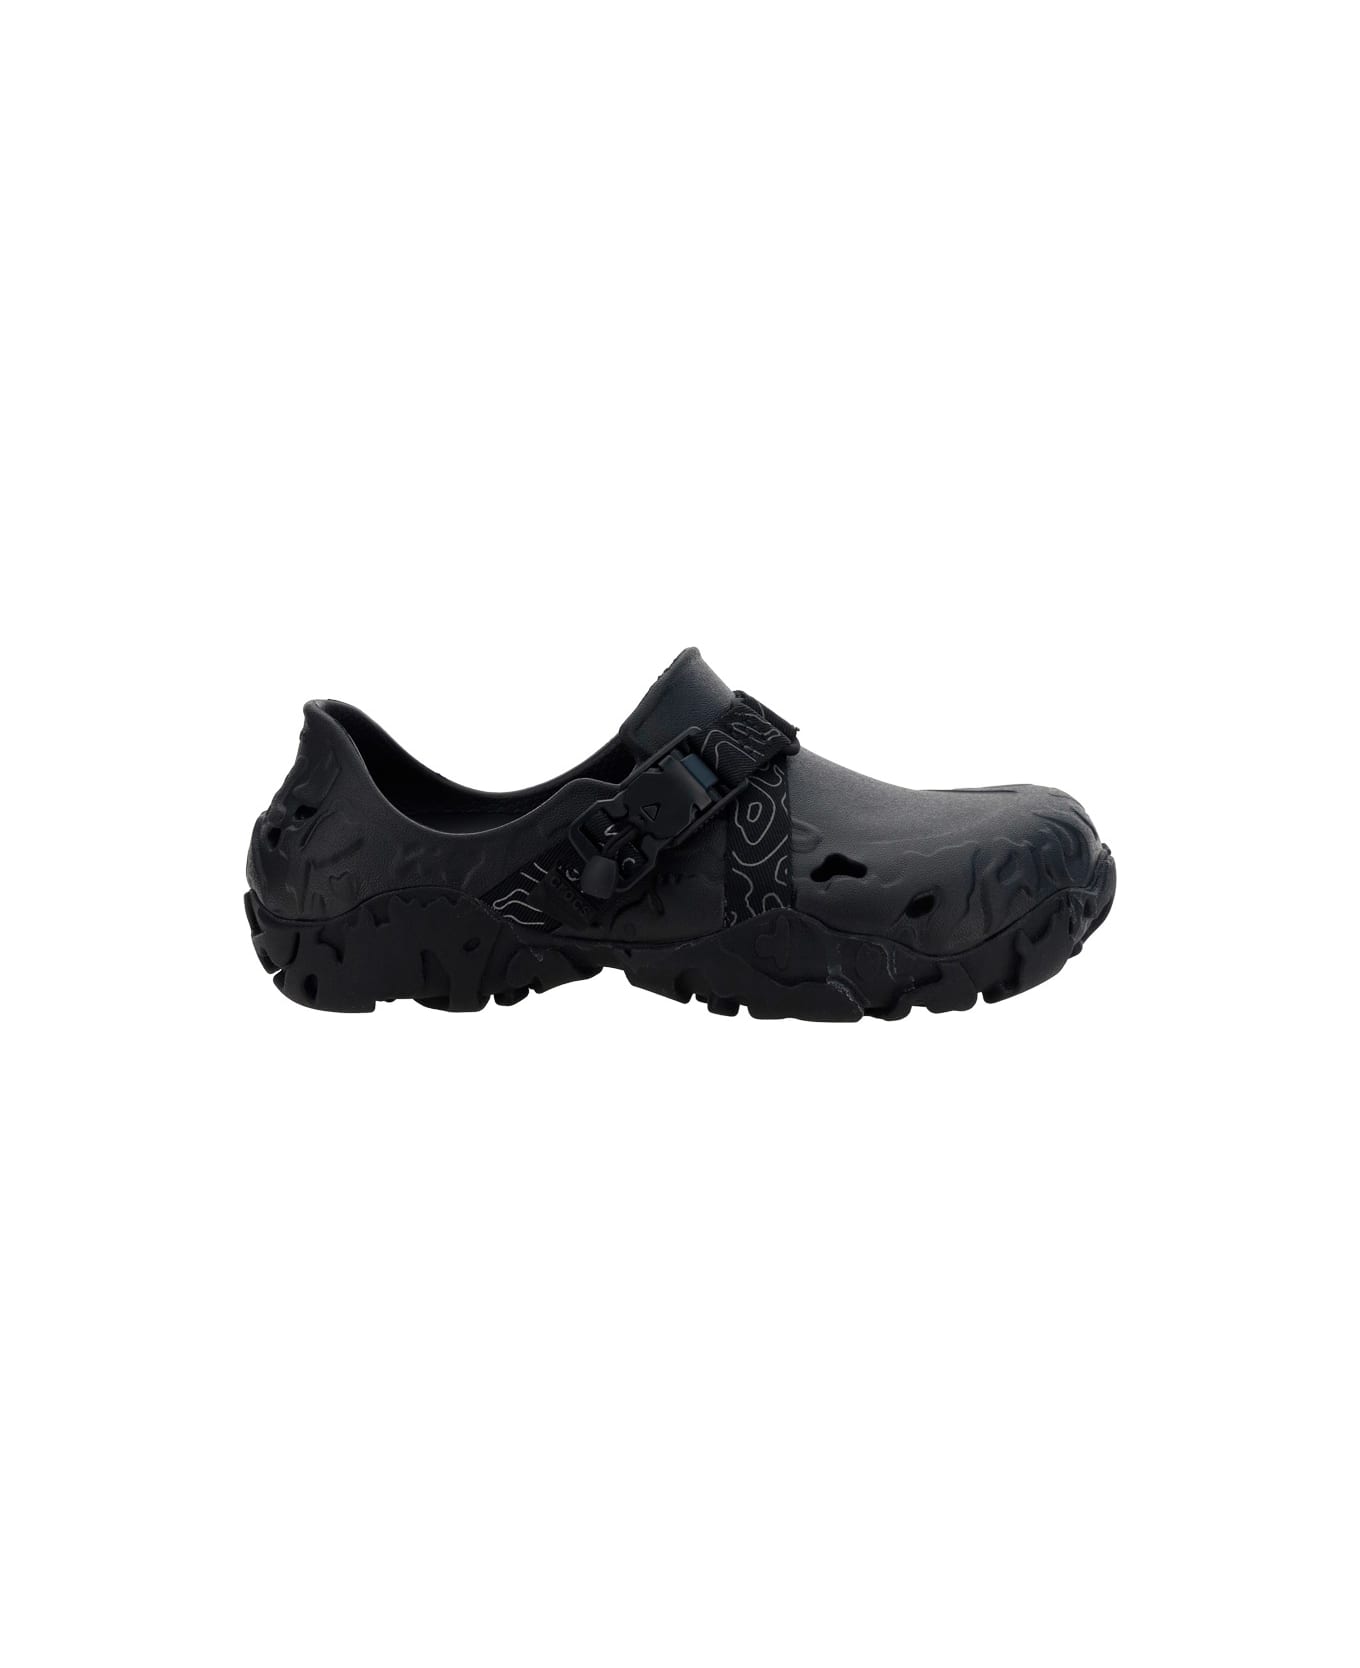 Crocs All Terrain Sandals - Black